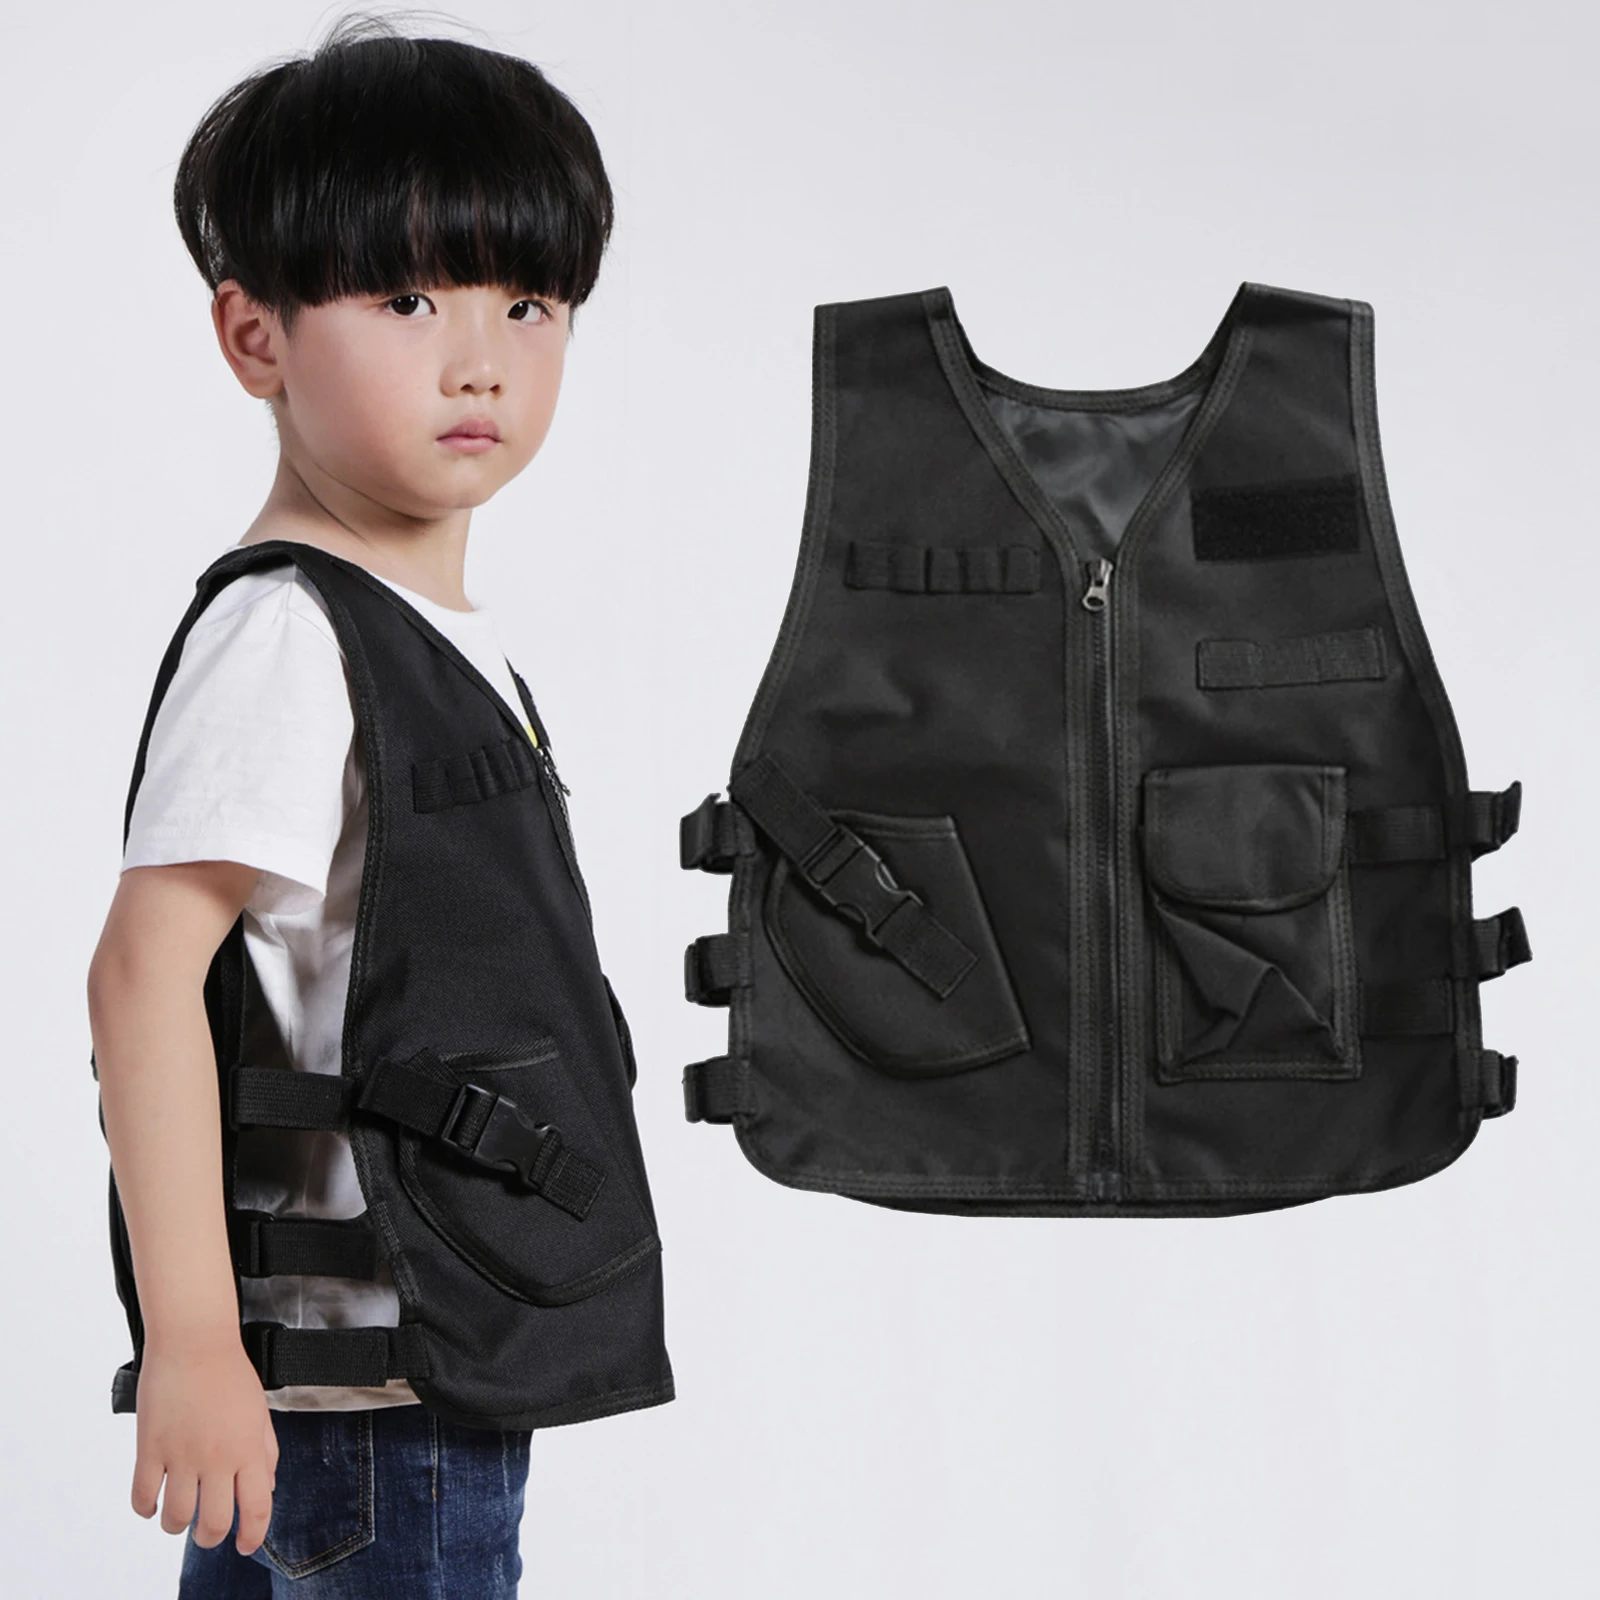 Kids Tactical Vest Holster Waistcoat Assault Gear Army Plate Carrier Outdoor